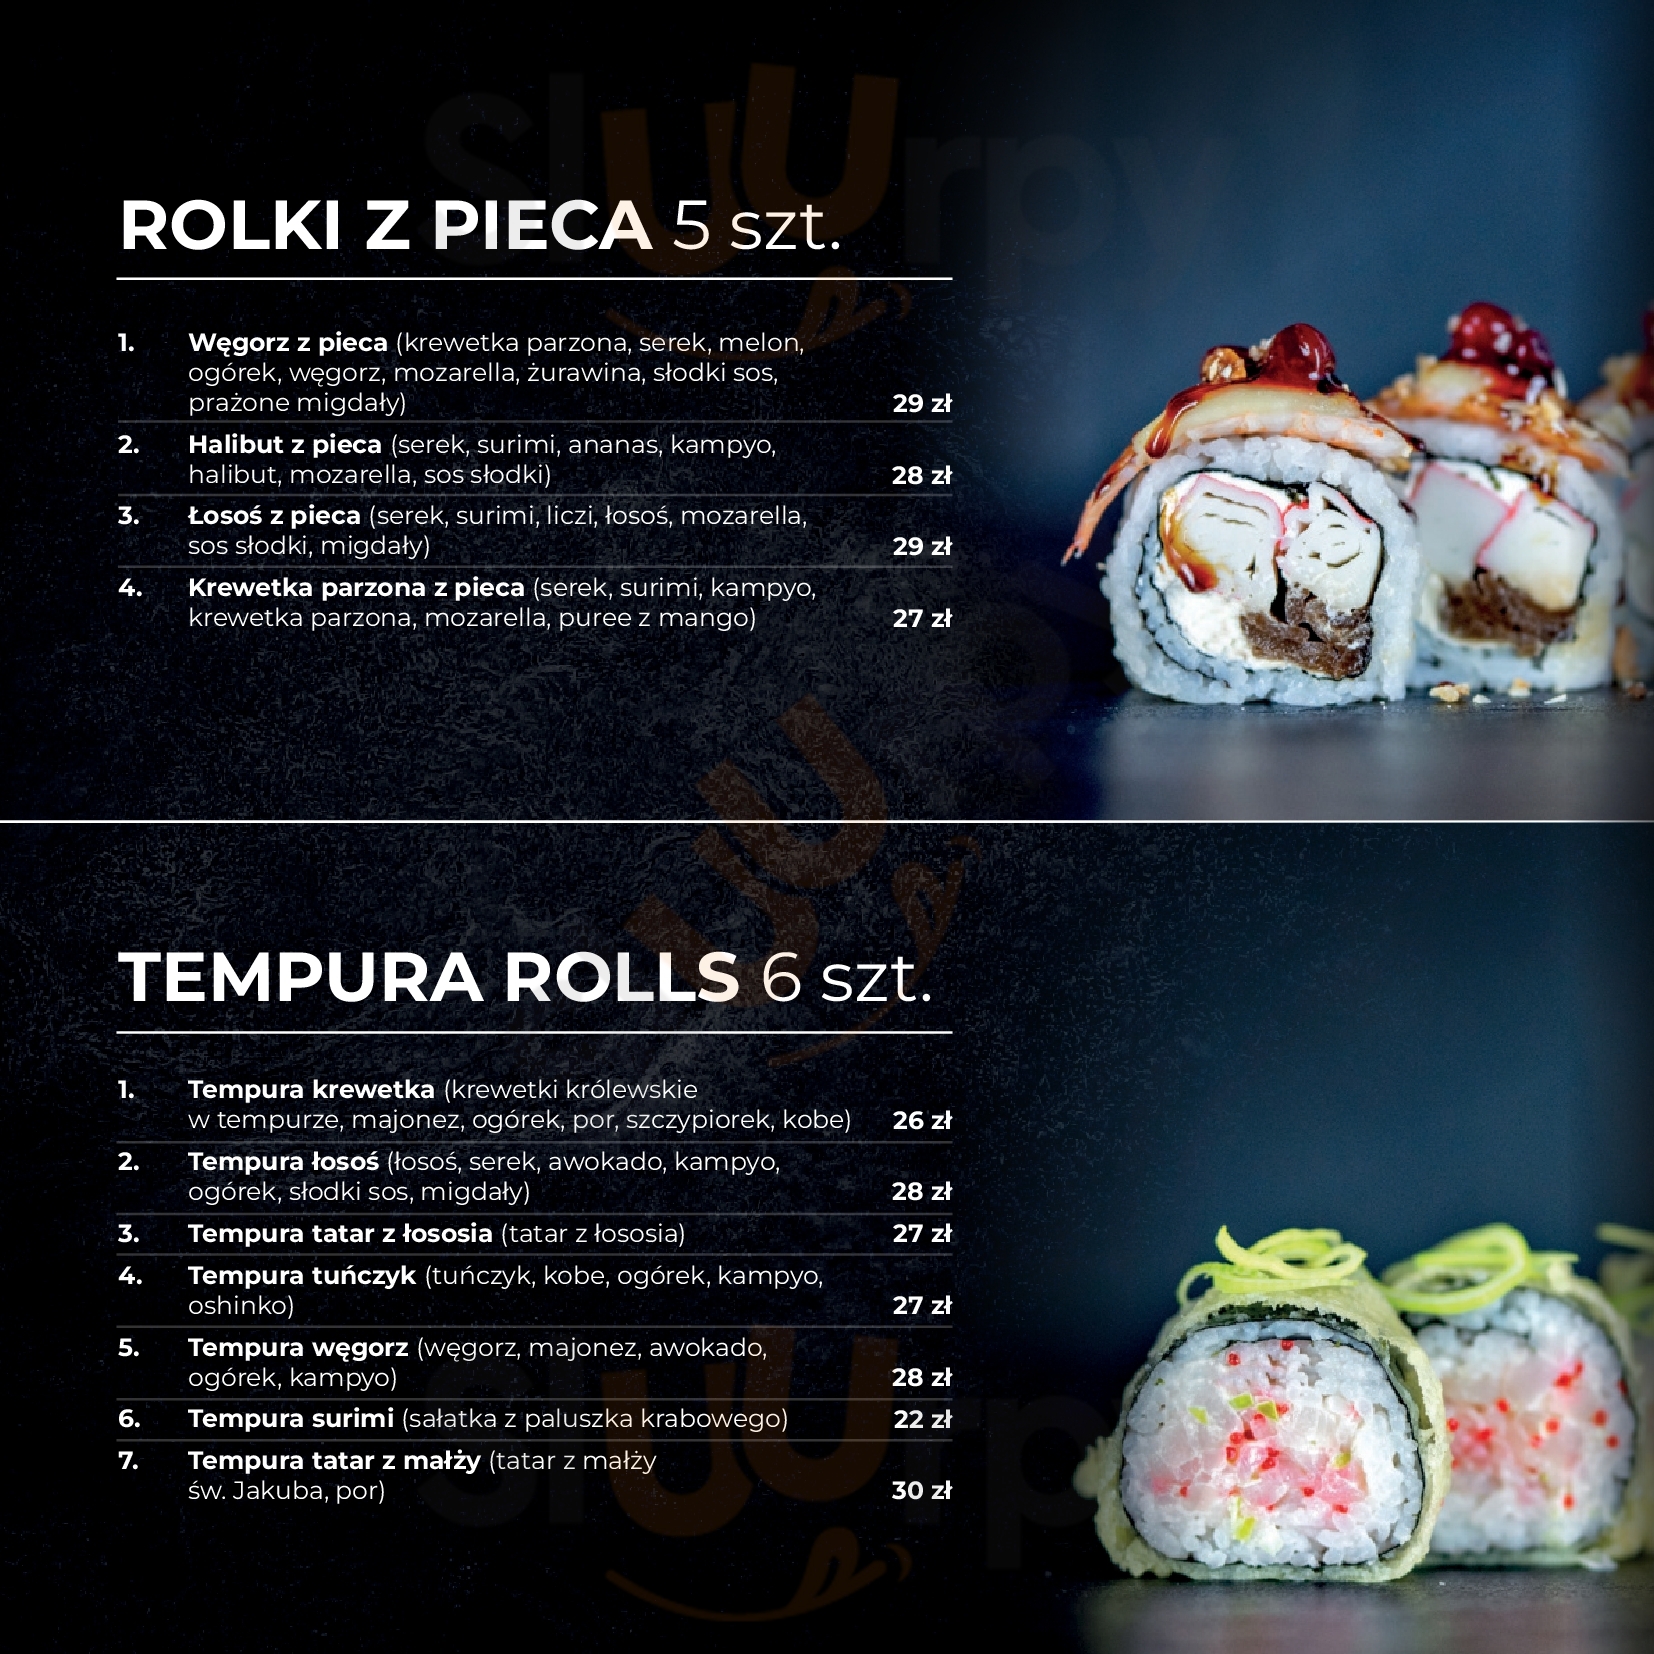 Okami Sushi Menu Delivery【Menu & Prices】Guadalajara